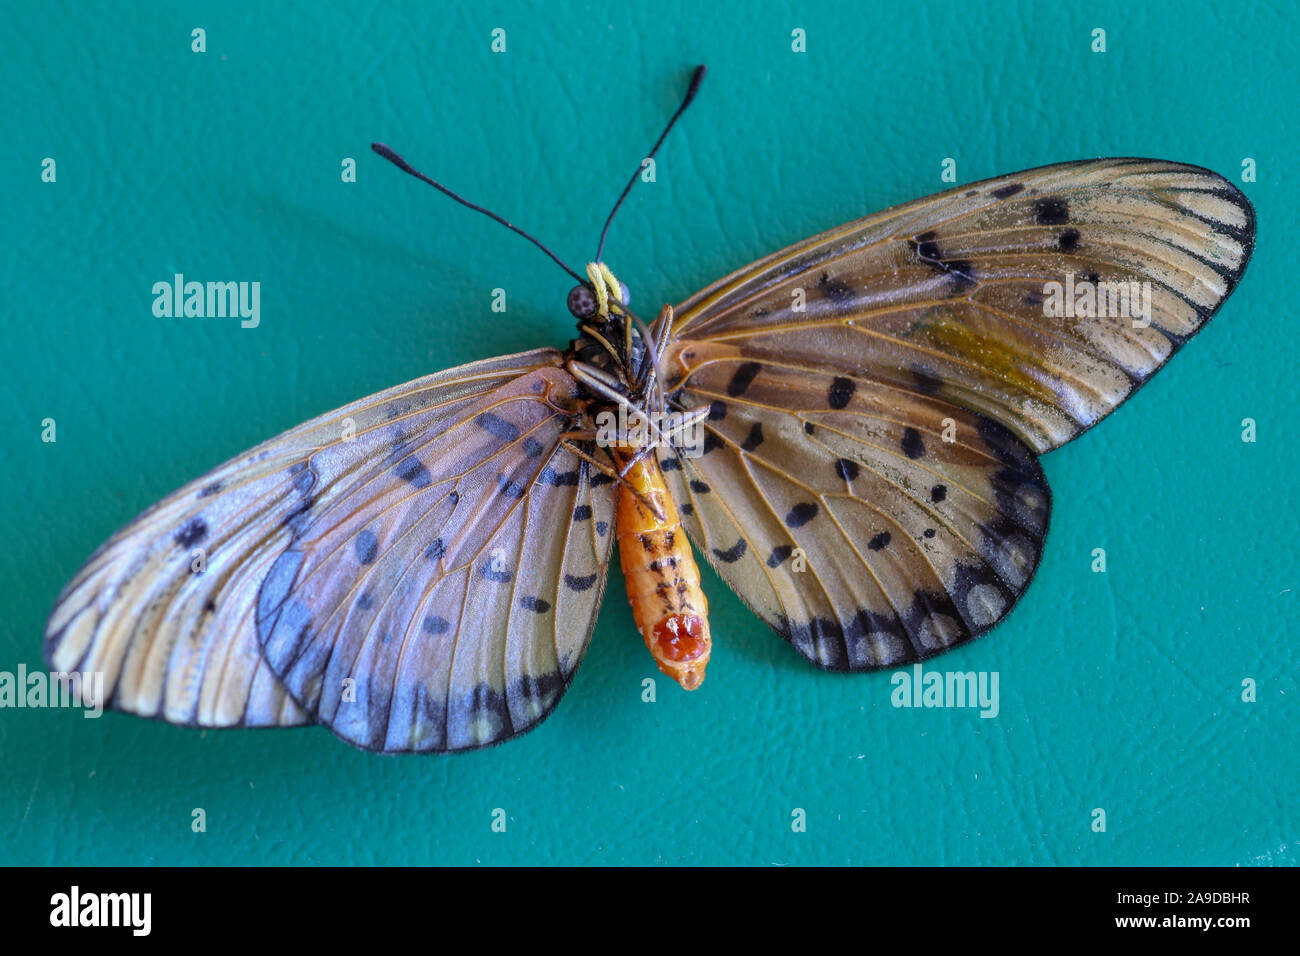 Farfalla con teso ali marrone su sfondo verde. Foto macro di un farfalle tropicali giacente sul suo retro. I raggi solari sono riflessi. Foto Stock